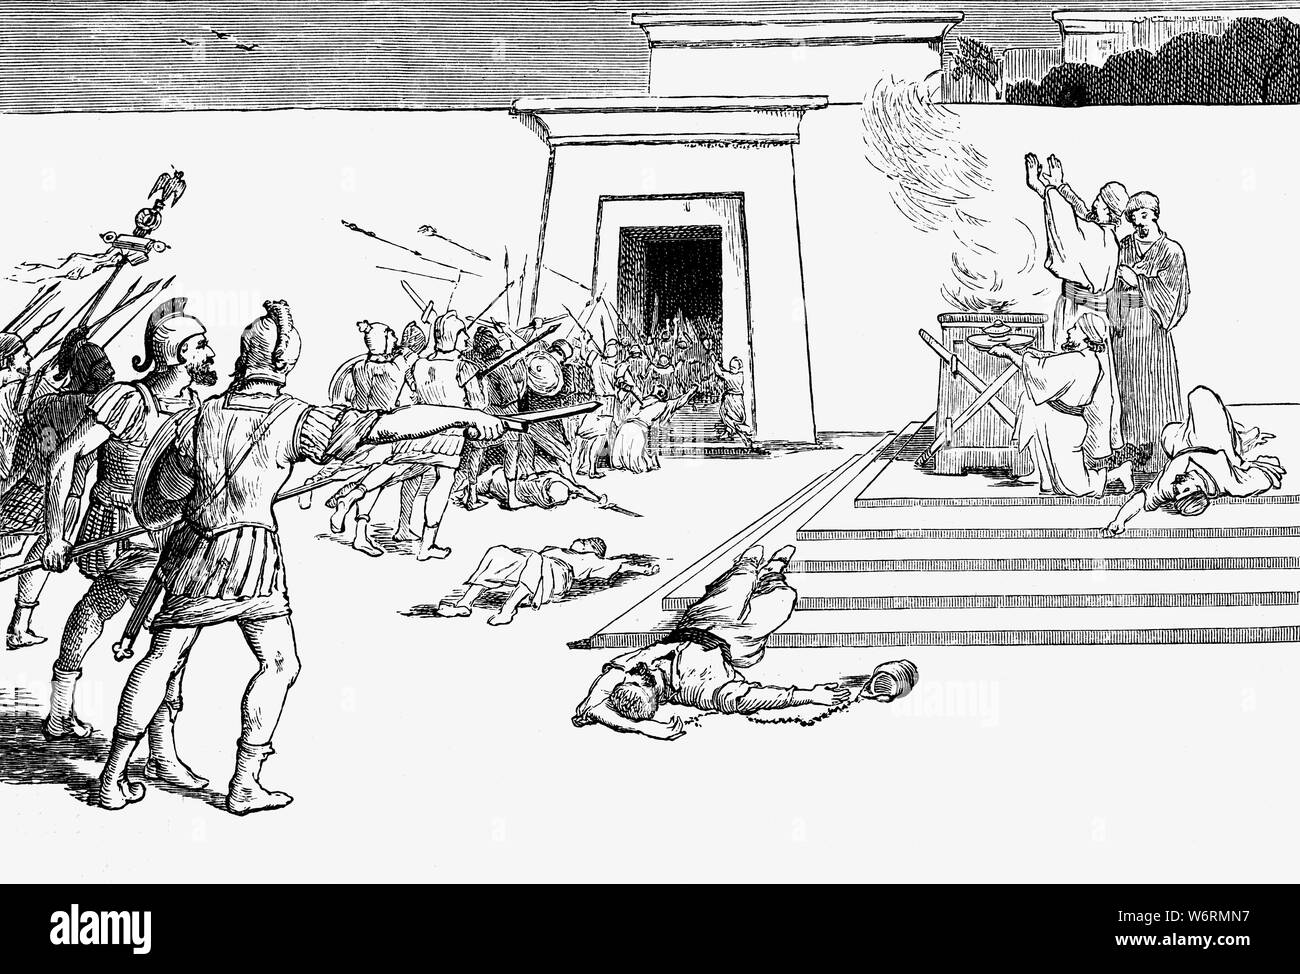 Pompeo il grande nel tempio di Jeusalem in seguito all'assedio di Gerusalemme (63 BC) che si sono verificati durante le sue campagne in oriente, e poco dopo la sua conclusione positiva della terza guerra Mithridatic. Pompeo era stato chiesto di intervenire in una controversia su eredità al trono che si è trasformato in una guerra tra Hyrcanus II e Aristobulo II per il trono del regno Hasmonean. La conquista di Gerusalemme, tuttavia, scritto il termine ebraico di indipendenza e la incorporazione di Giudea come un client regno della Repubblica Romana. Foto Stock